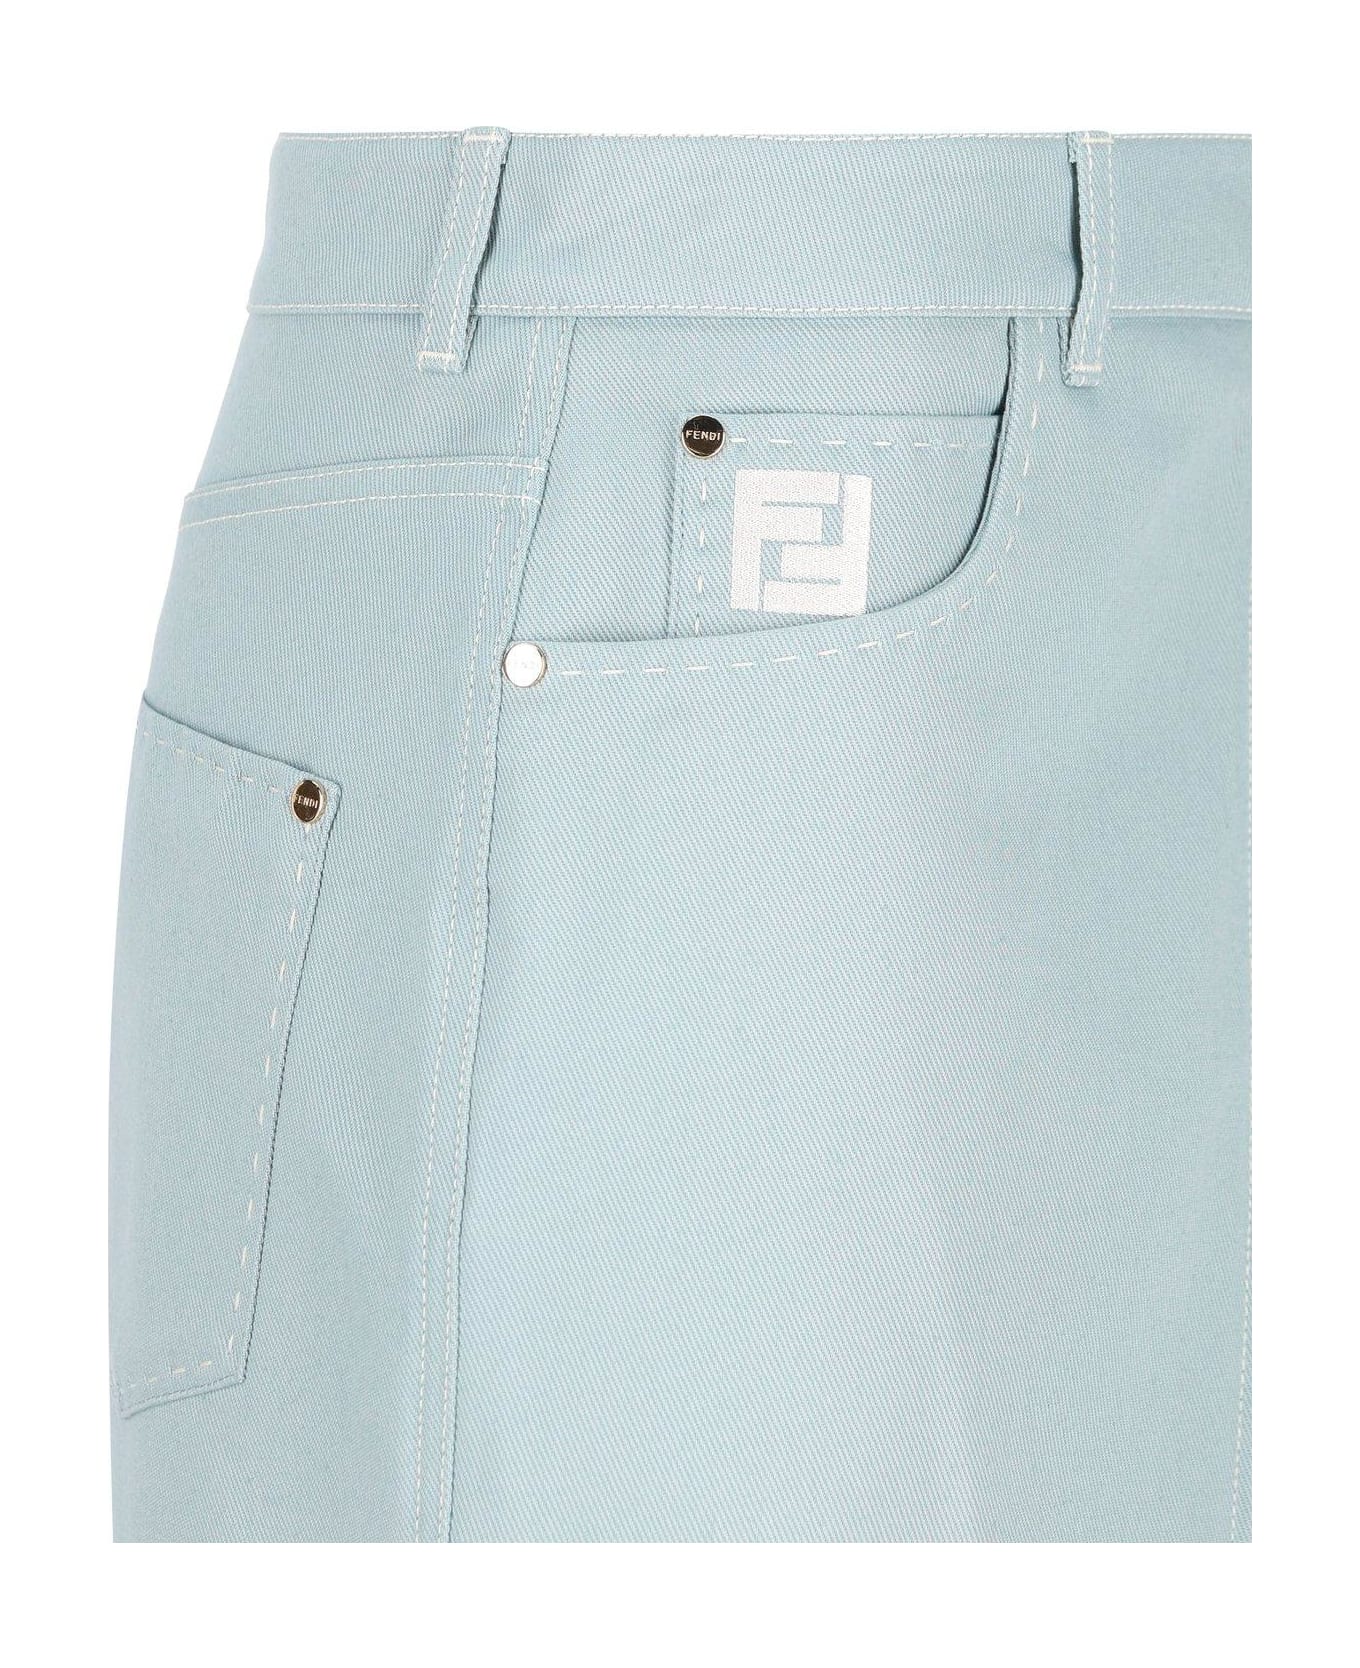 Fendi Zip-up Denim Midi Skirt - Denim/pale blue スカート